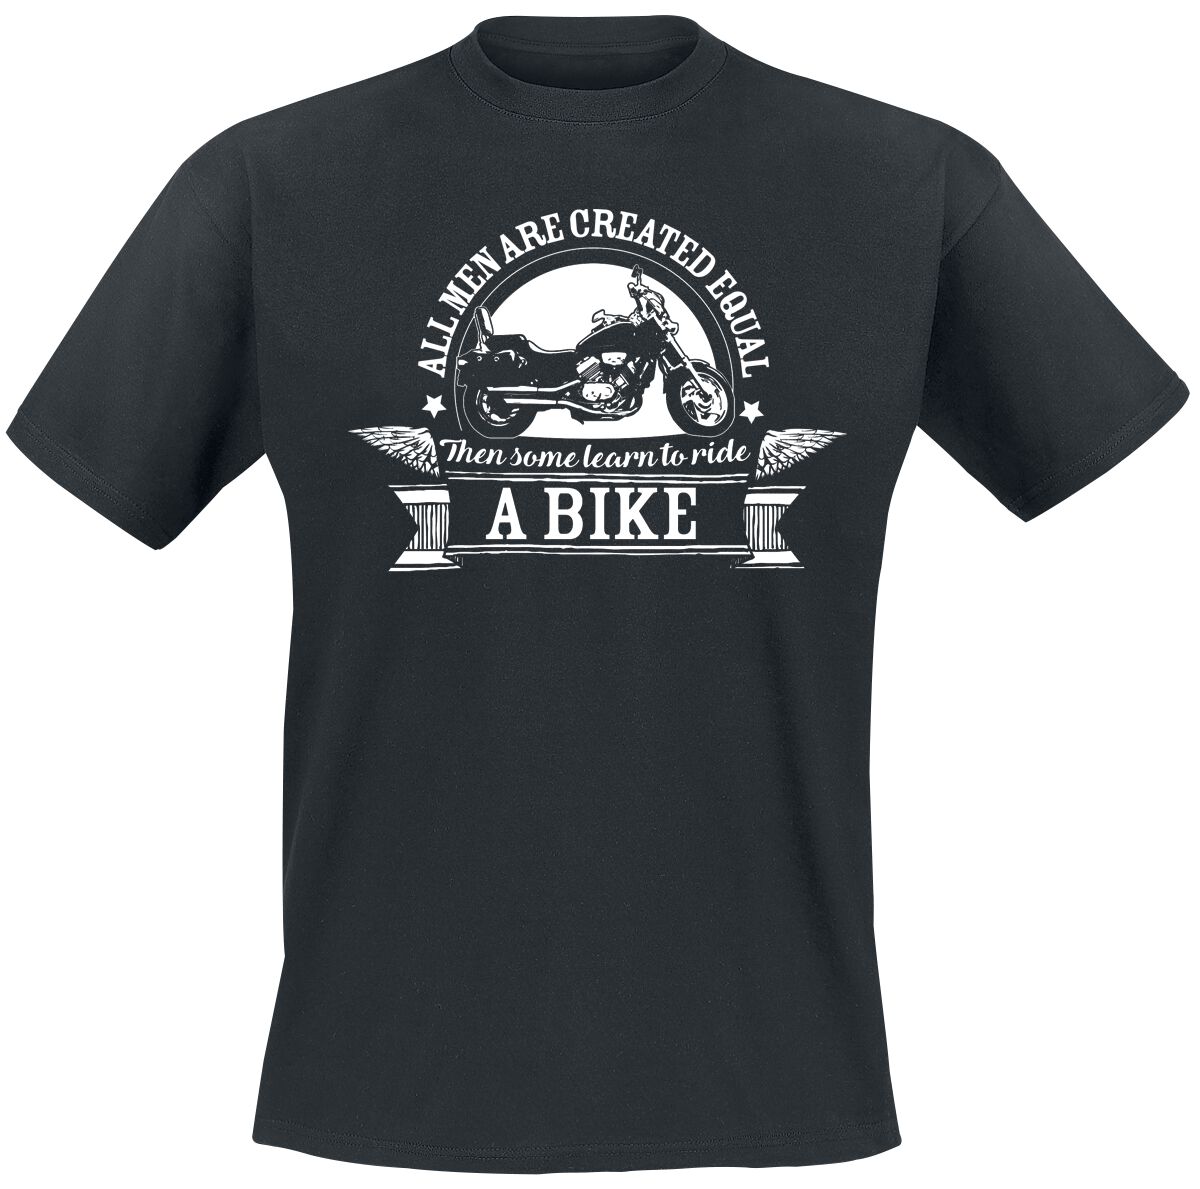 Sprüche T-Shirt - Ride A Bike - L bis 5XL - für Männer - Größe 3XL - schwarz